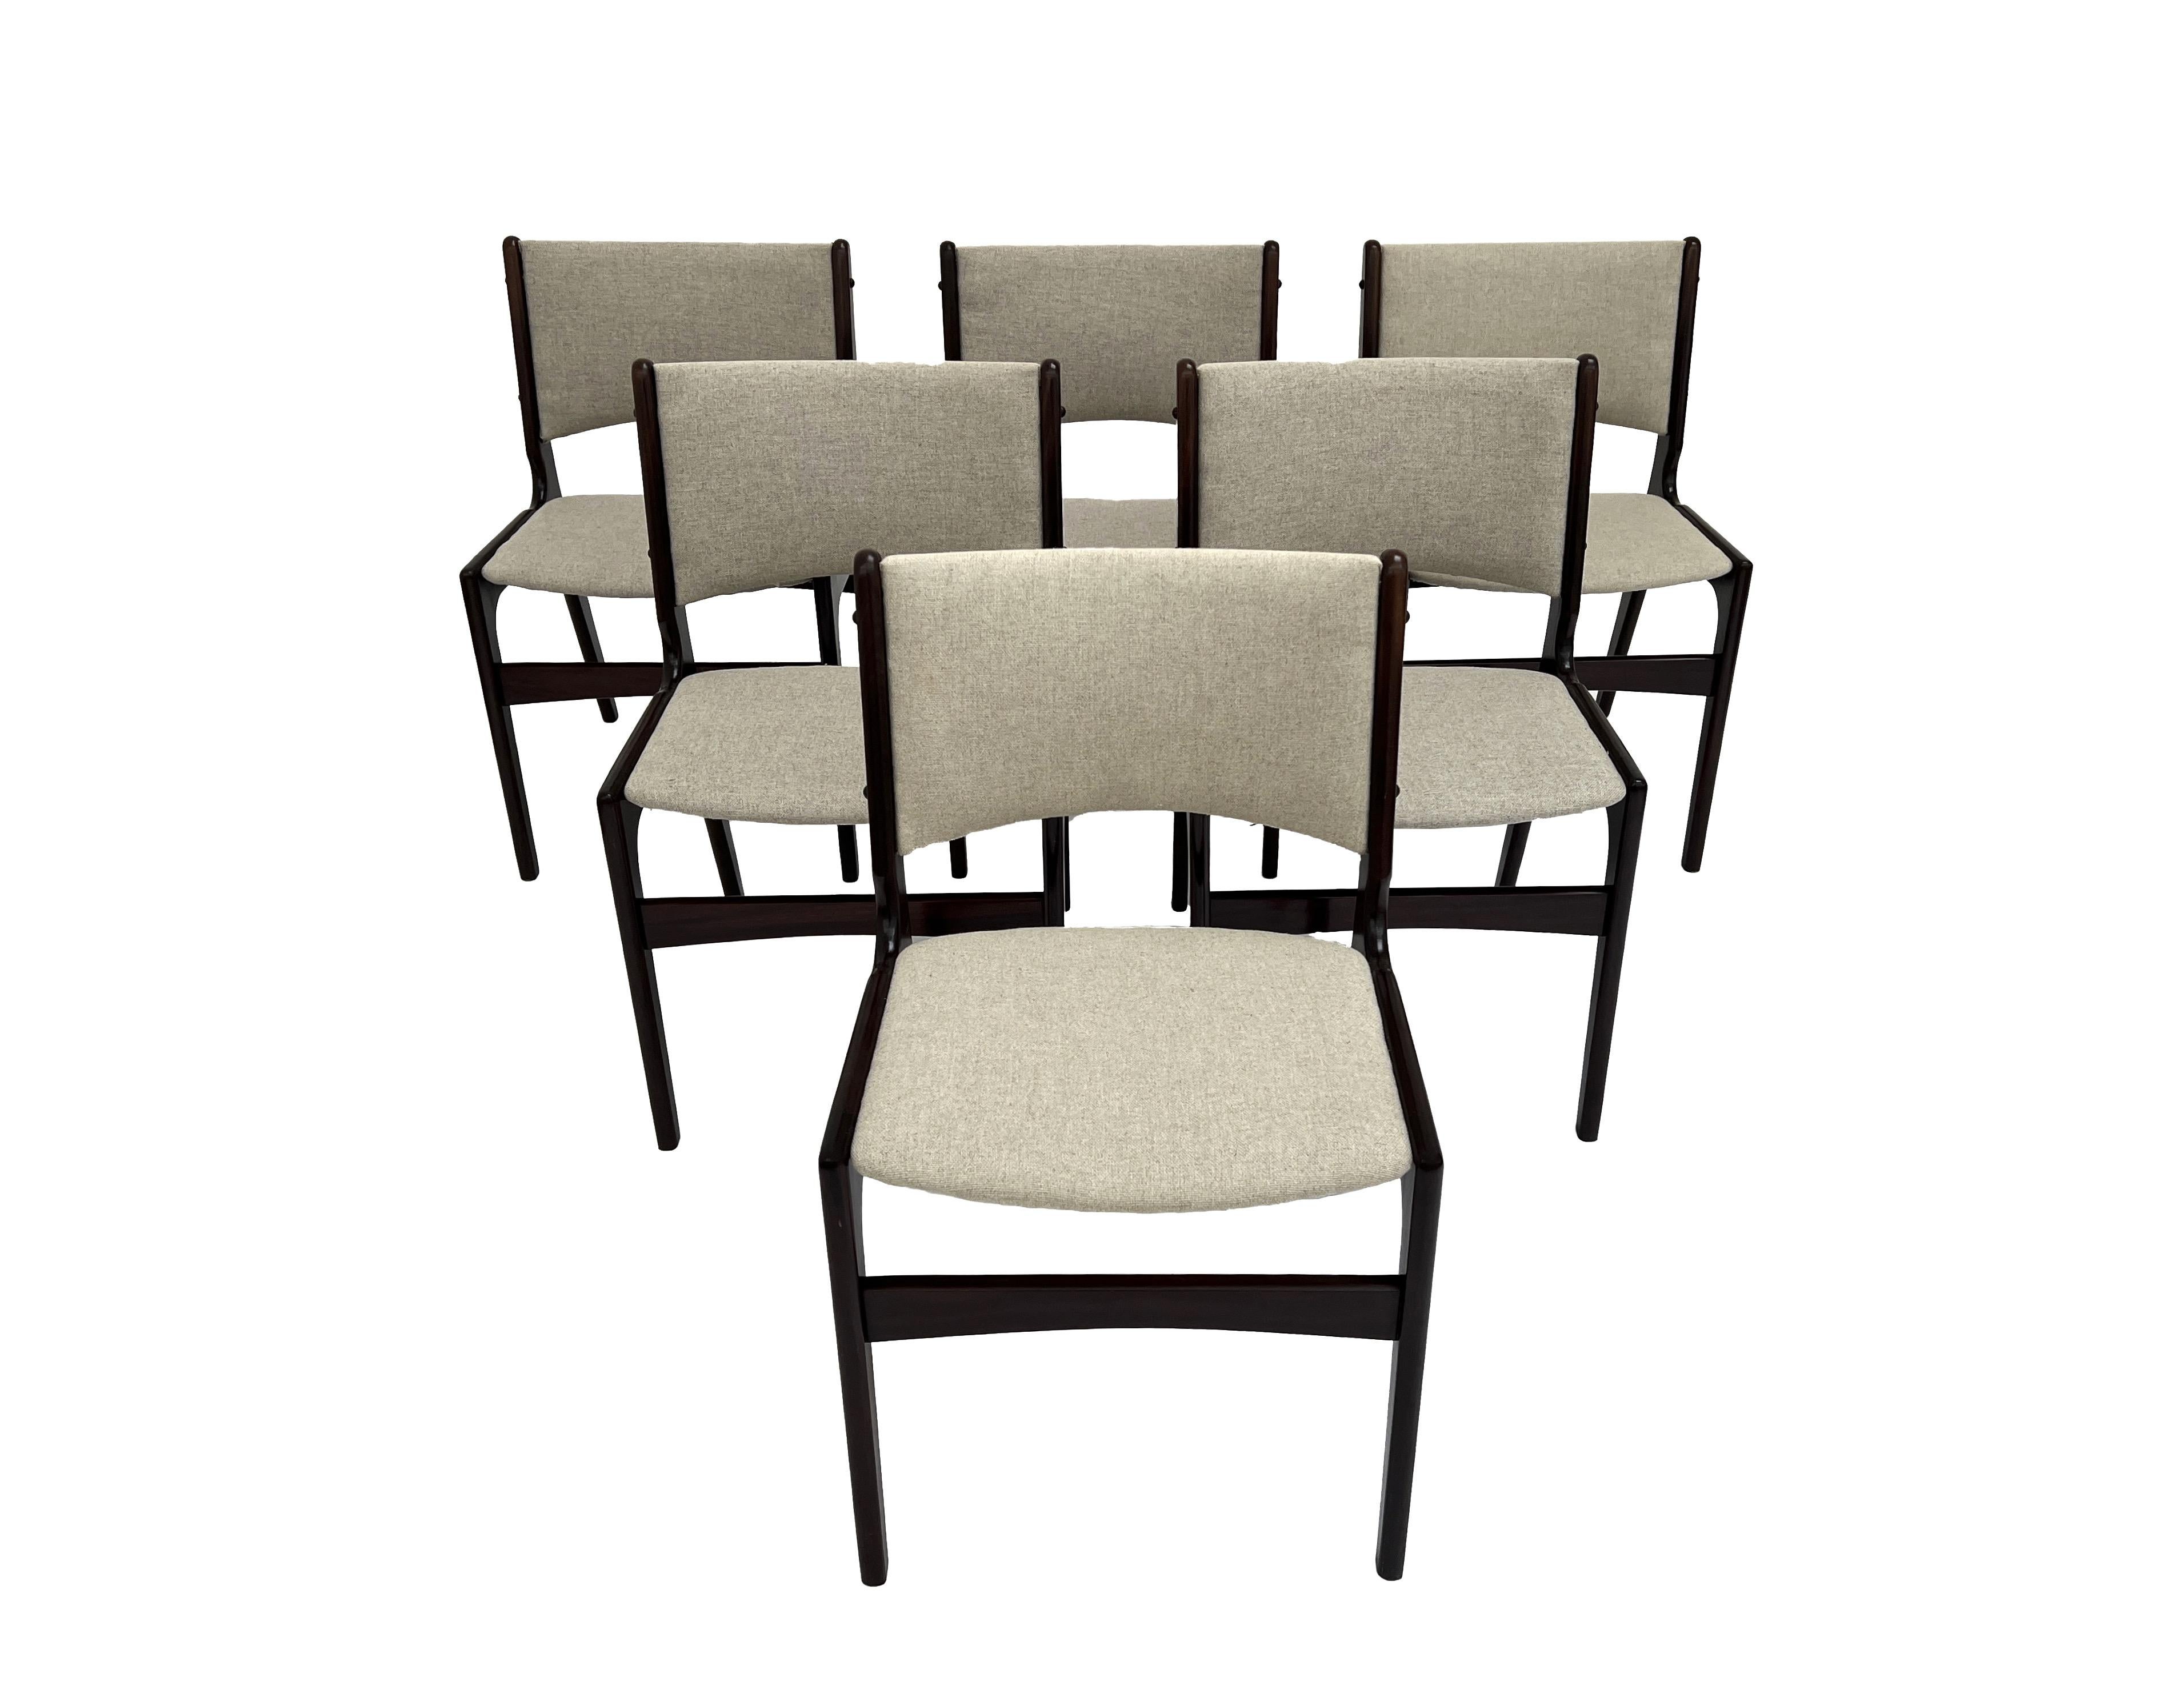 Ein schönes Set von 6 Esszimmerstühlen Modell 89 aus Teakholz und cremefarbener Wolle, entworfen von Erik Buch für Anders Møbelfabrik, ist eine stilvolle Ergänzung für jeden Essbereich.

Die Stühle haben breite Sitzpads und geformte Rückenlehnen für